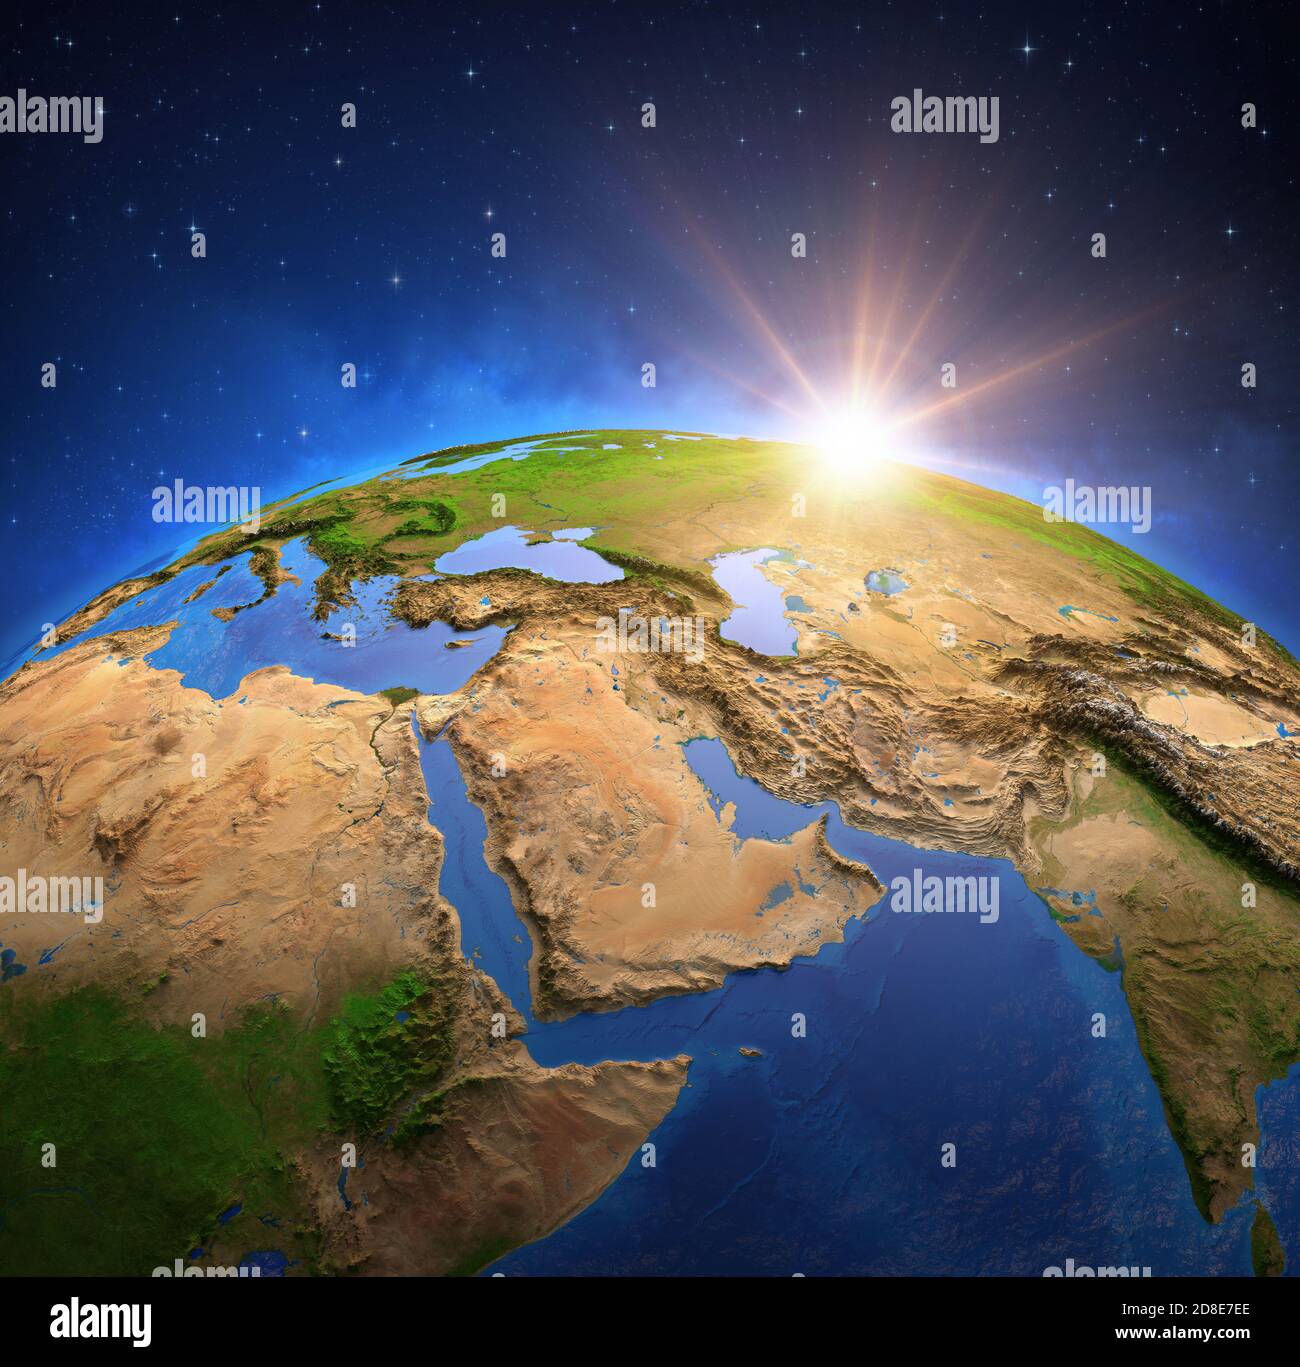 Surface de la planète Terre vue à partir d'un satellite, focalisé sur le Moyen-Orient, le soleil se levant à l'horizon. Carte du golfe Persique. Éléments fournis par la NASA Banque D'Images